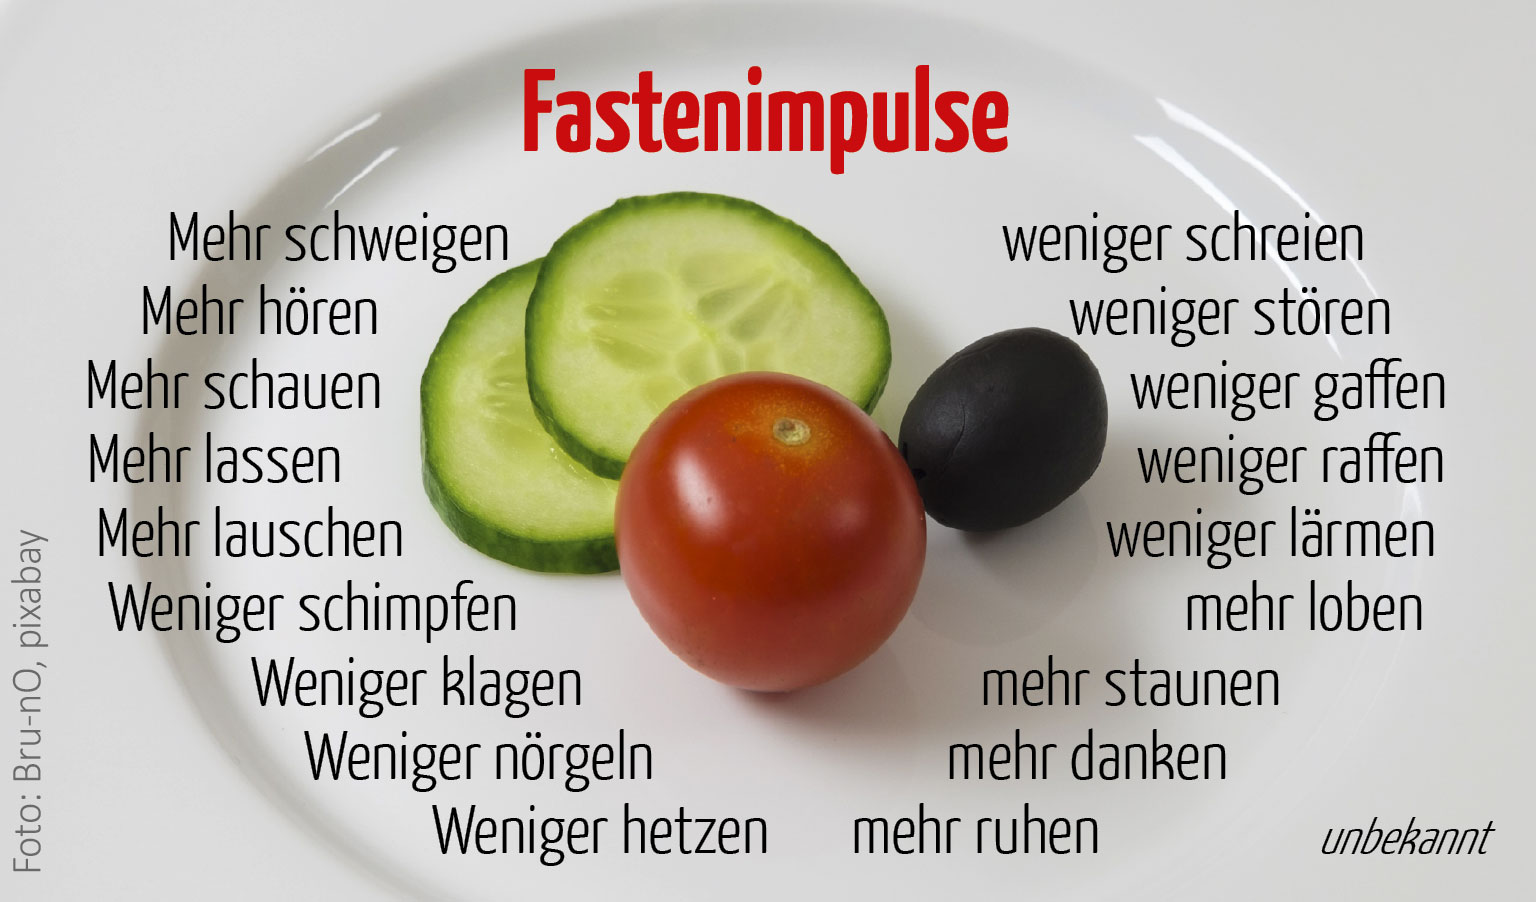 Fastenimpulse (Foto Teller : Brun-nO, pixabay)